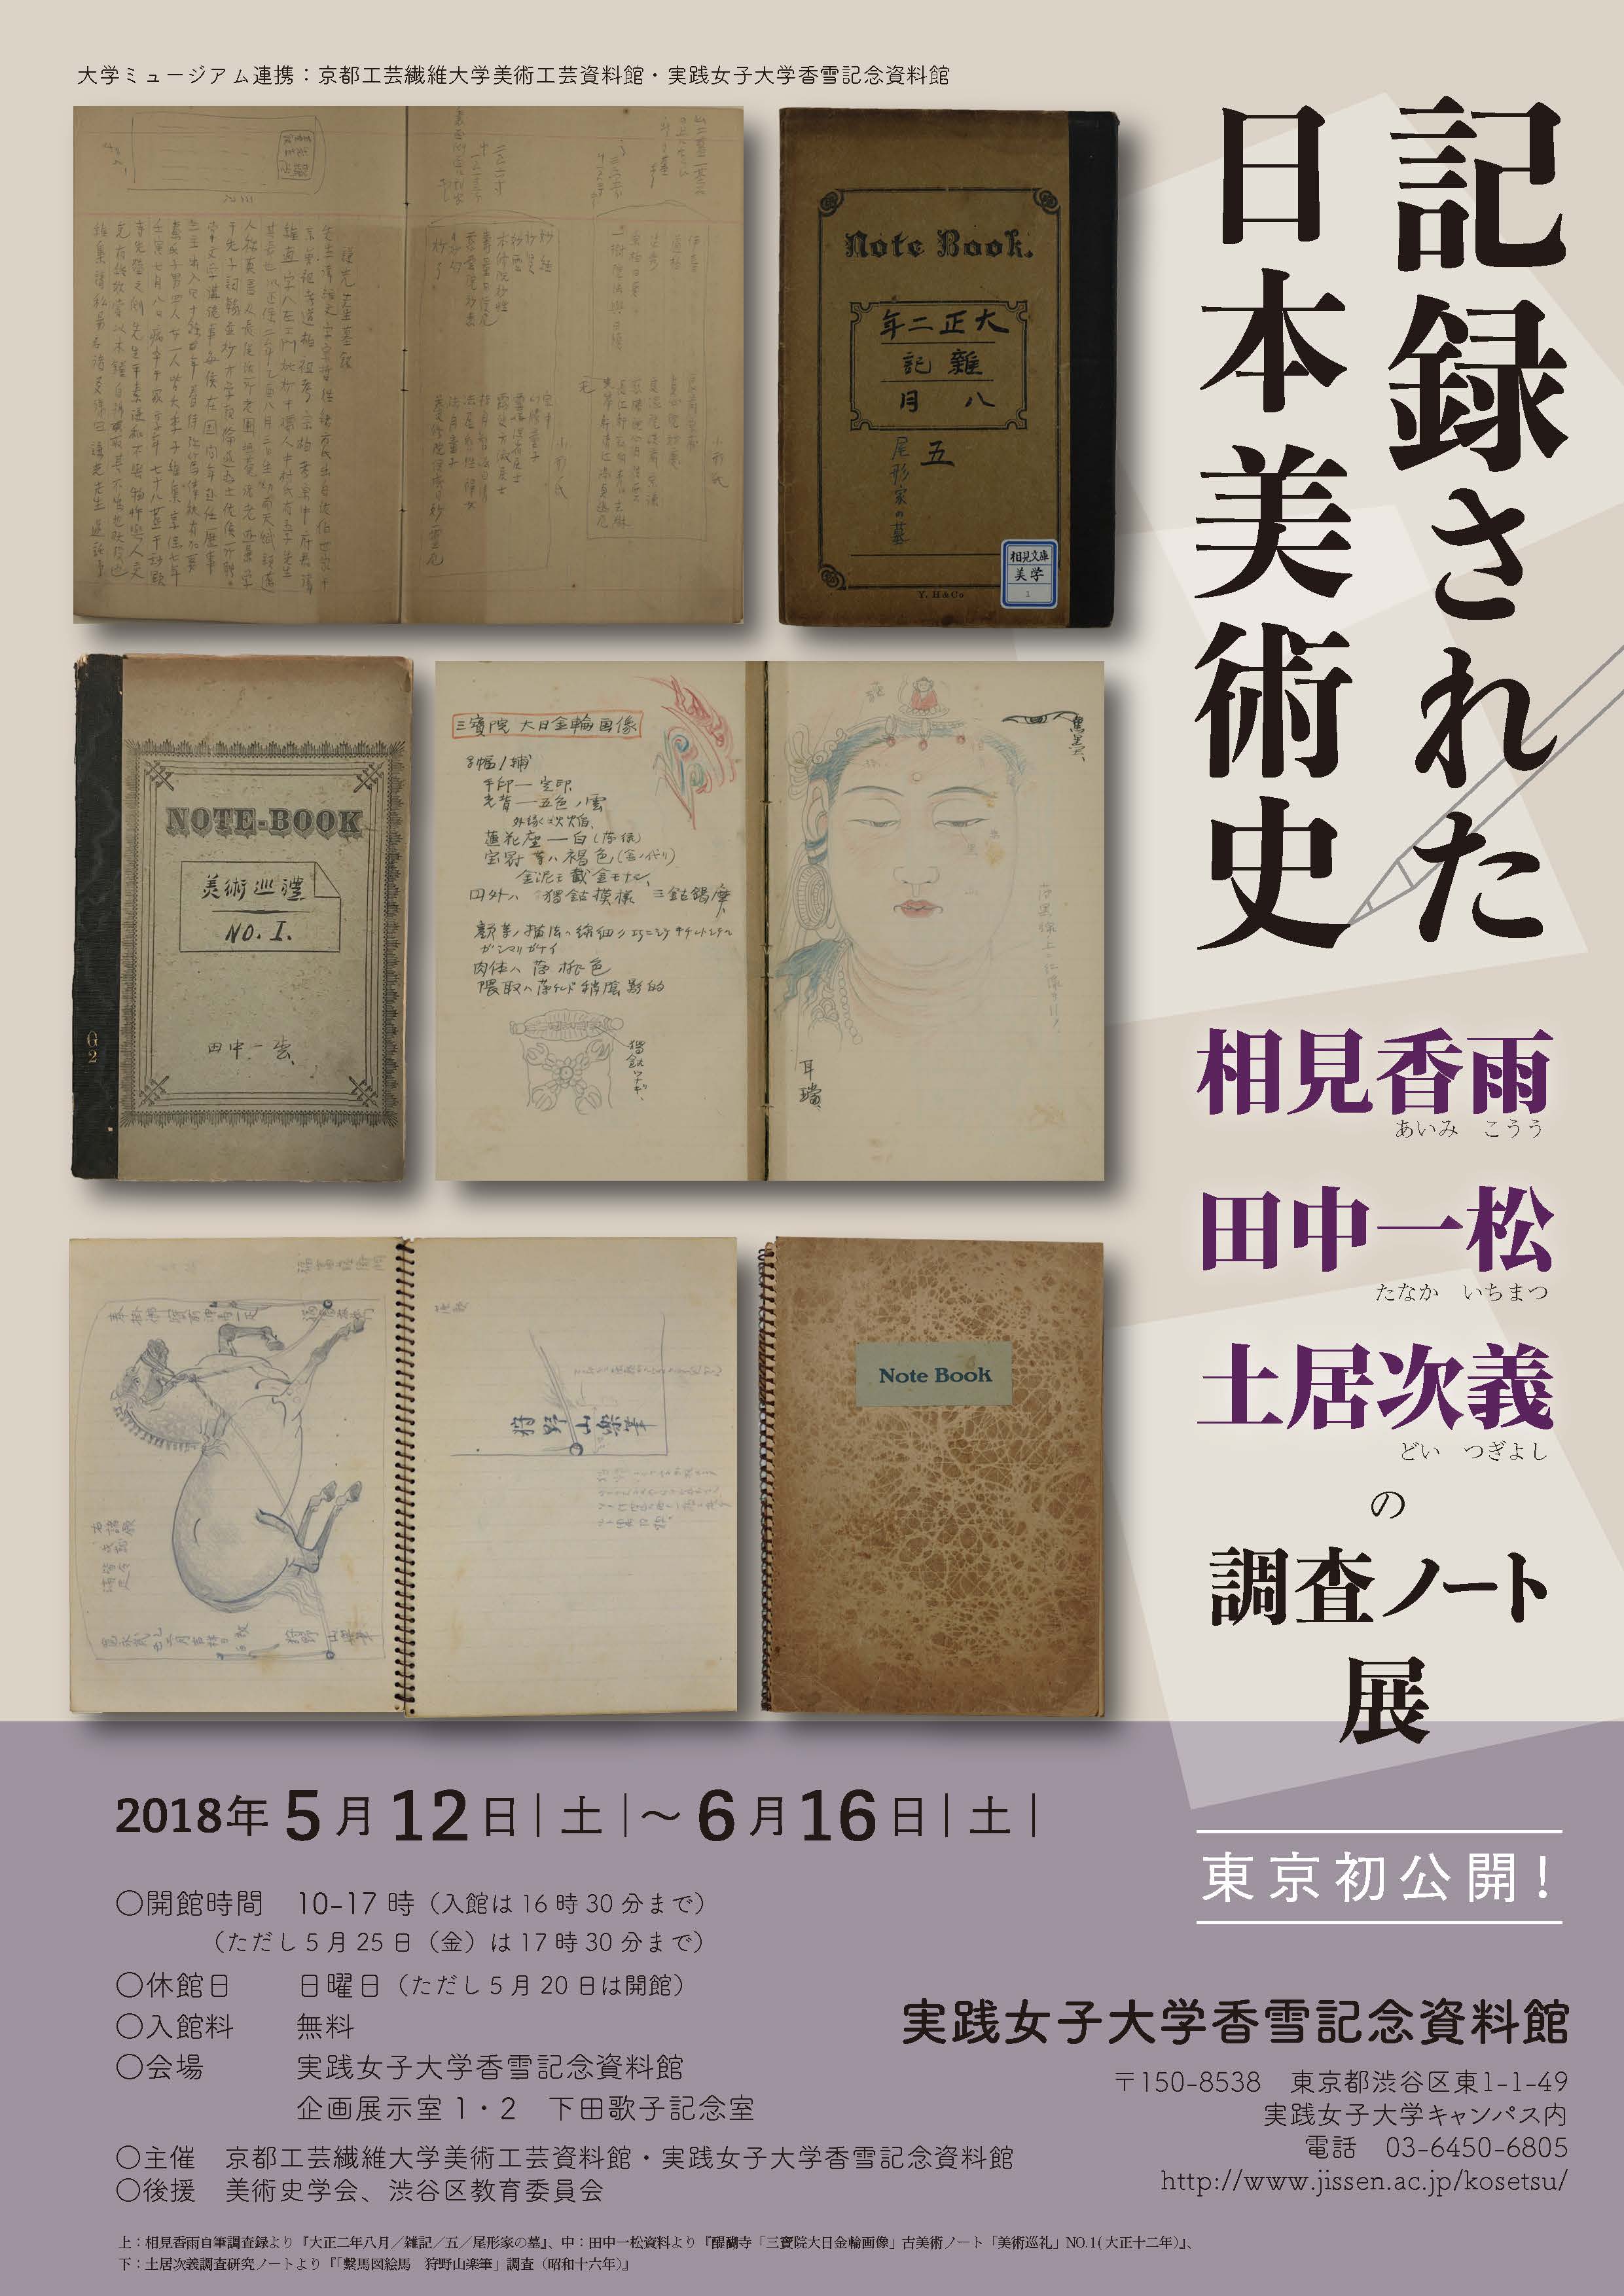 記録された日本美術史 相見香雨・田中一松・土居次義の調査ノート展 